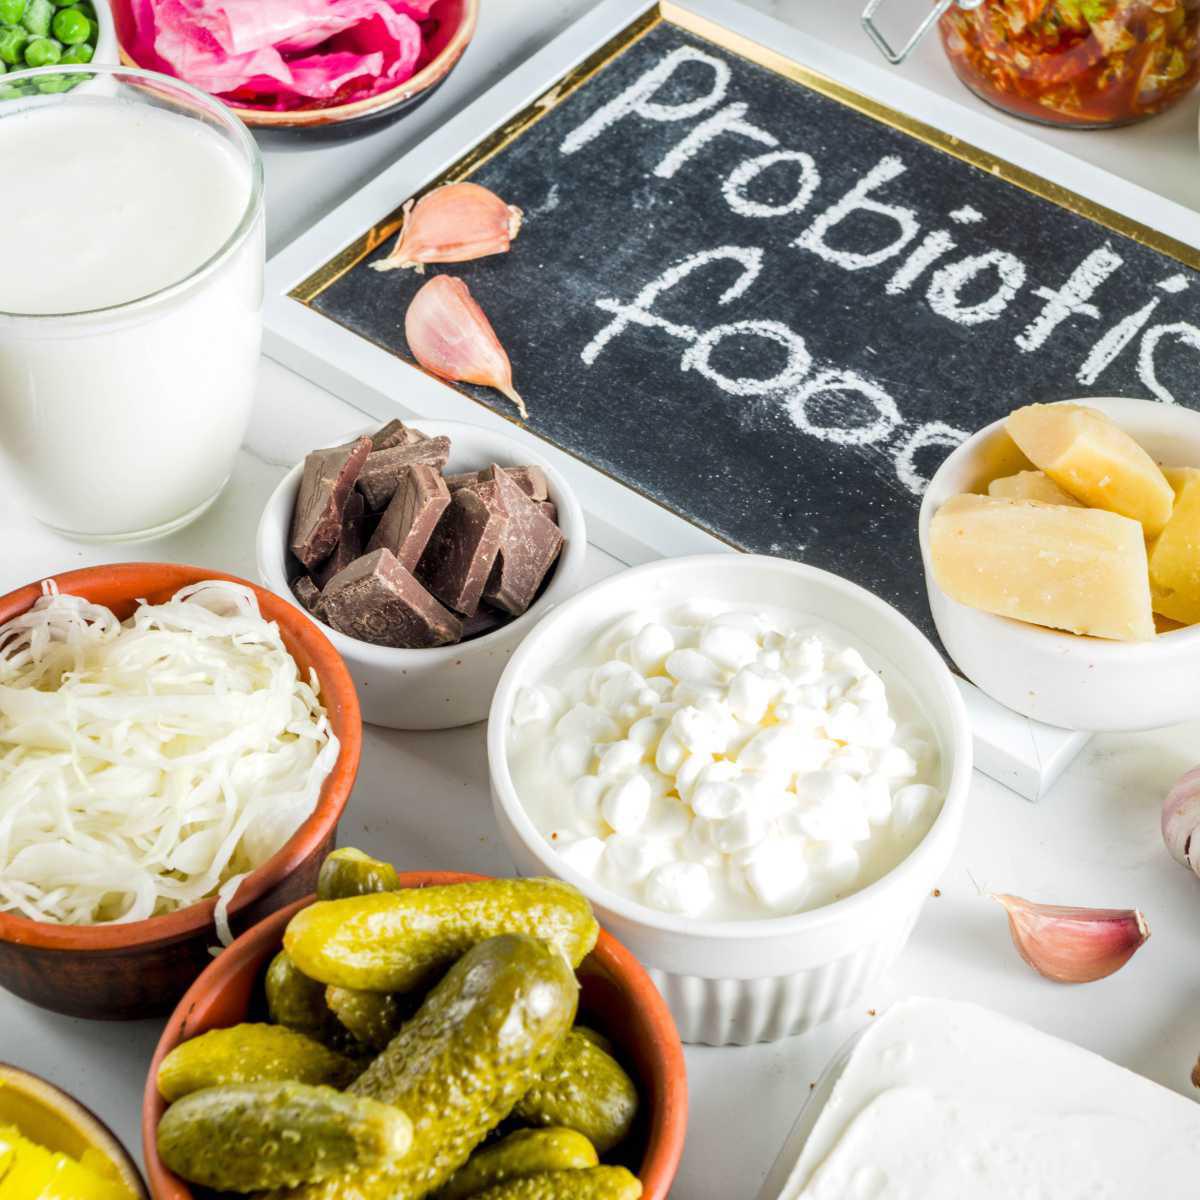  Alimentos ricos em probióticos